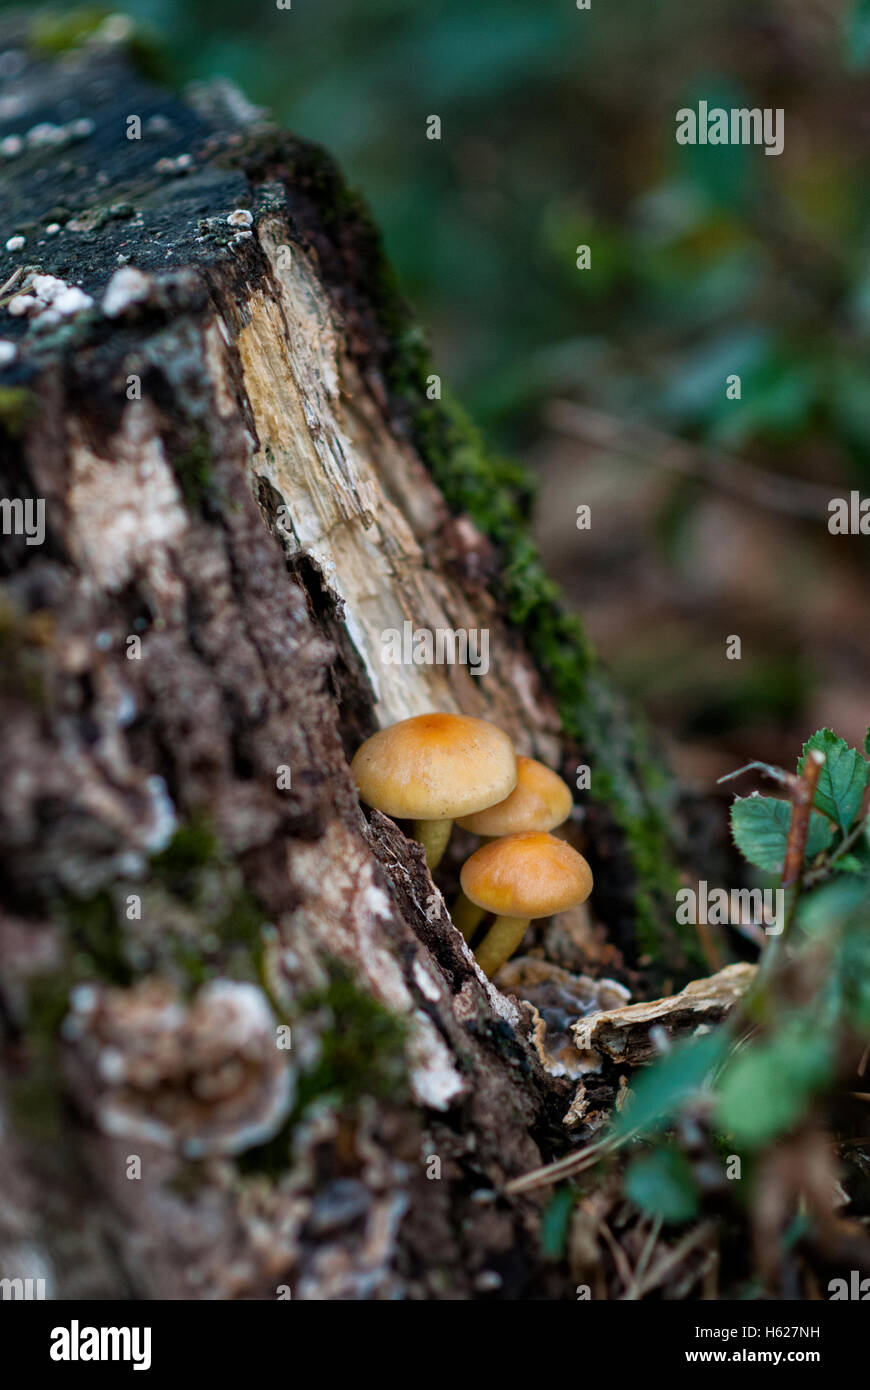 La culture des champignons frais sur le sol forestier Banque D'Images